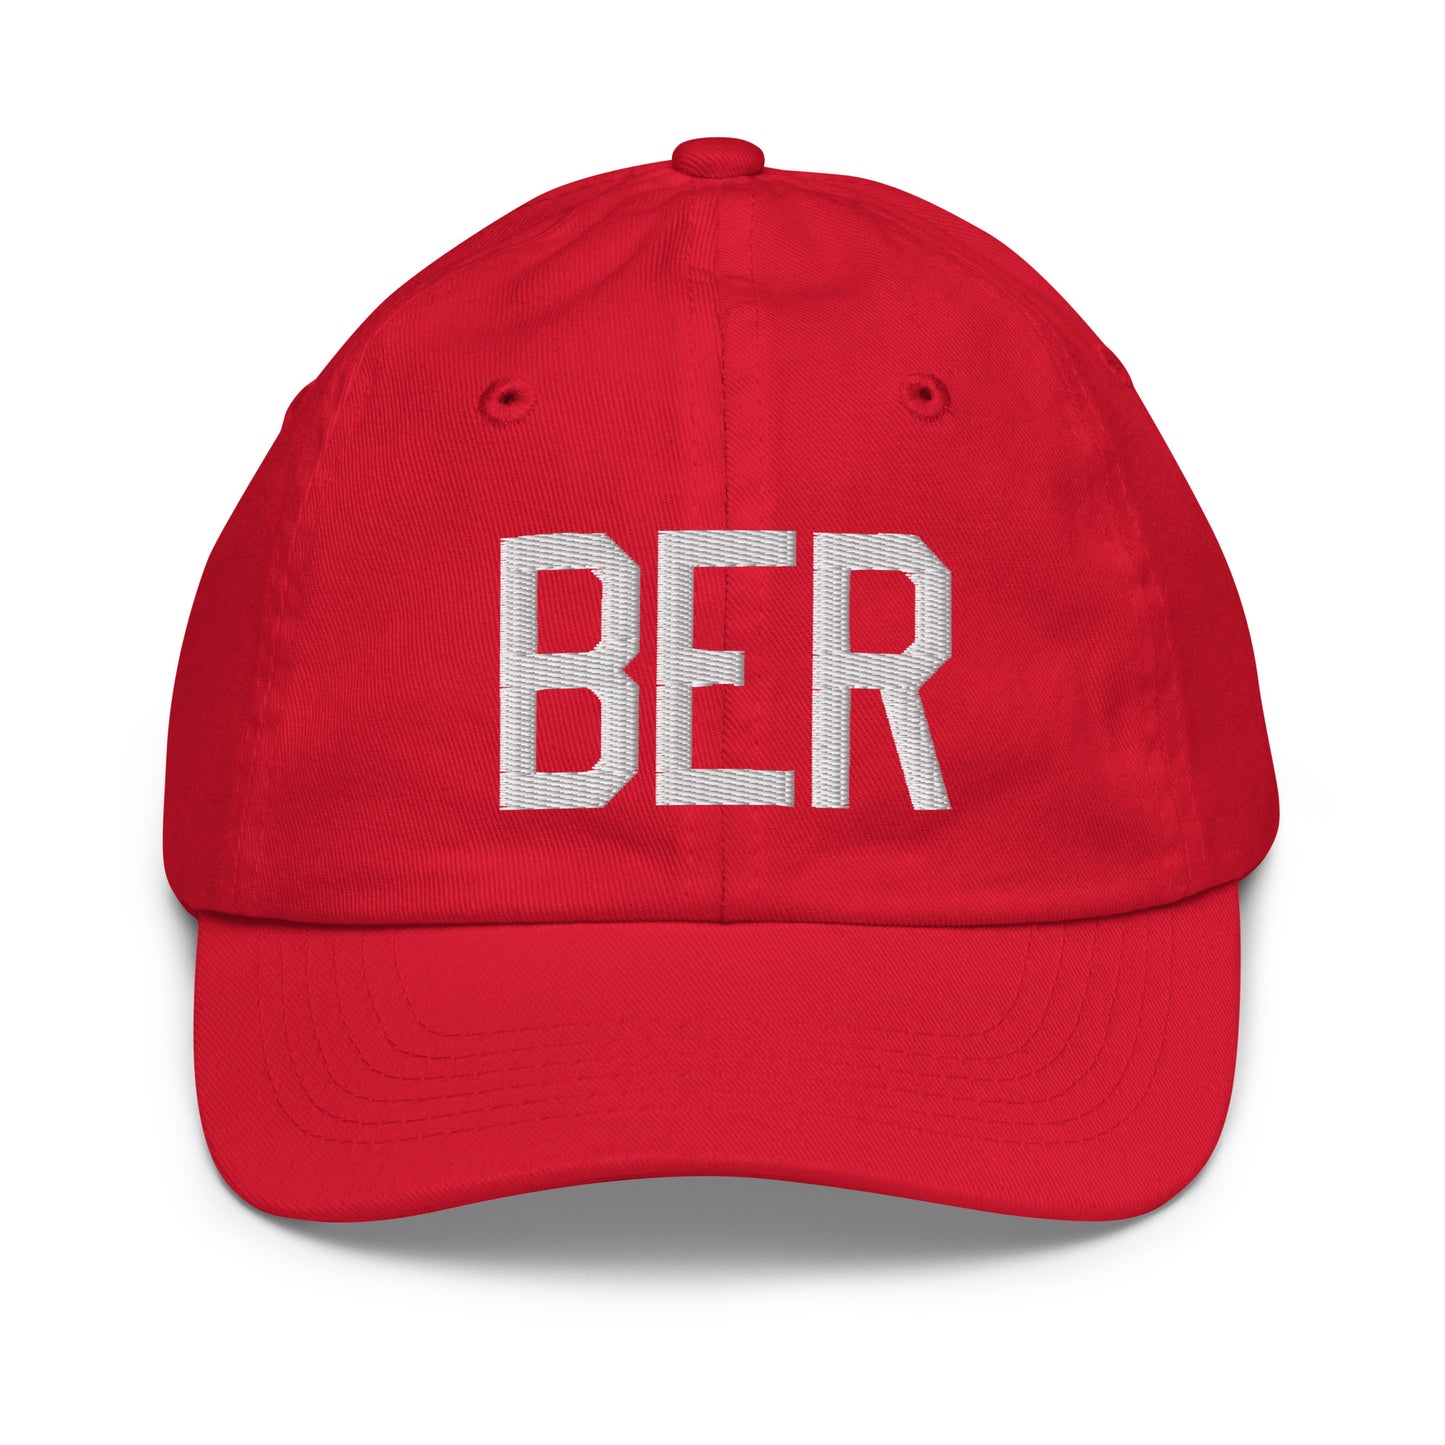 Airport Code Kid's Baseball Cap - White • BER Berlin • YHM Designs - Image 17